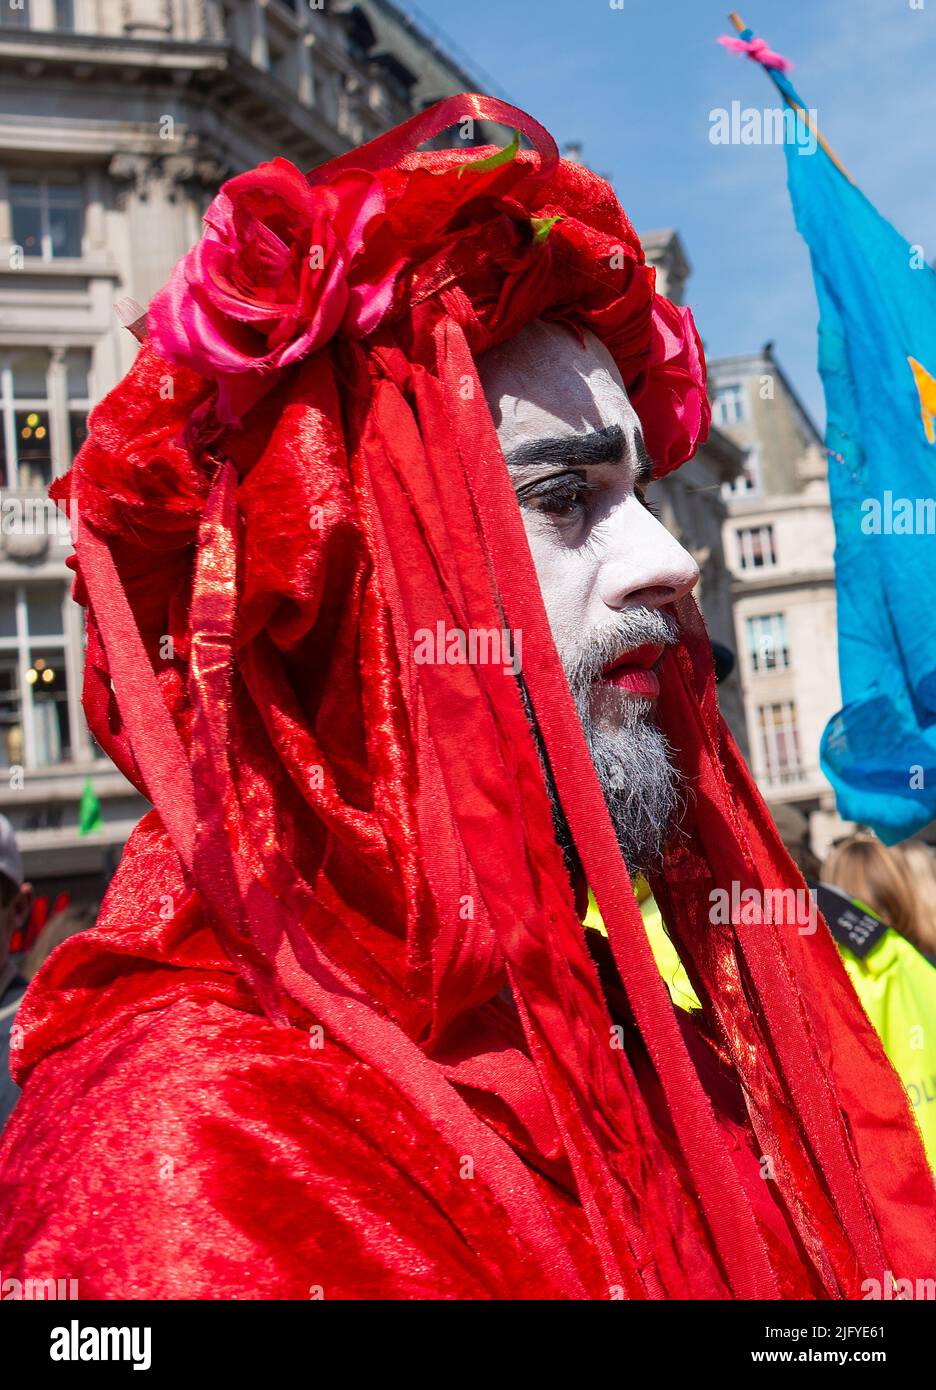 La Brigade Rouge à la manifestation de la rébellion des extinction, à Oxford Circus, Londres, en signe de protestation contre l'effondrement du climat mondial et l'effondrement écologique. Banque D'Images